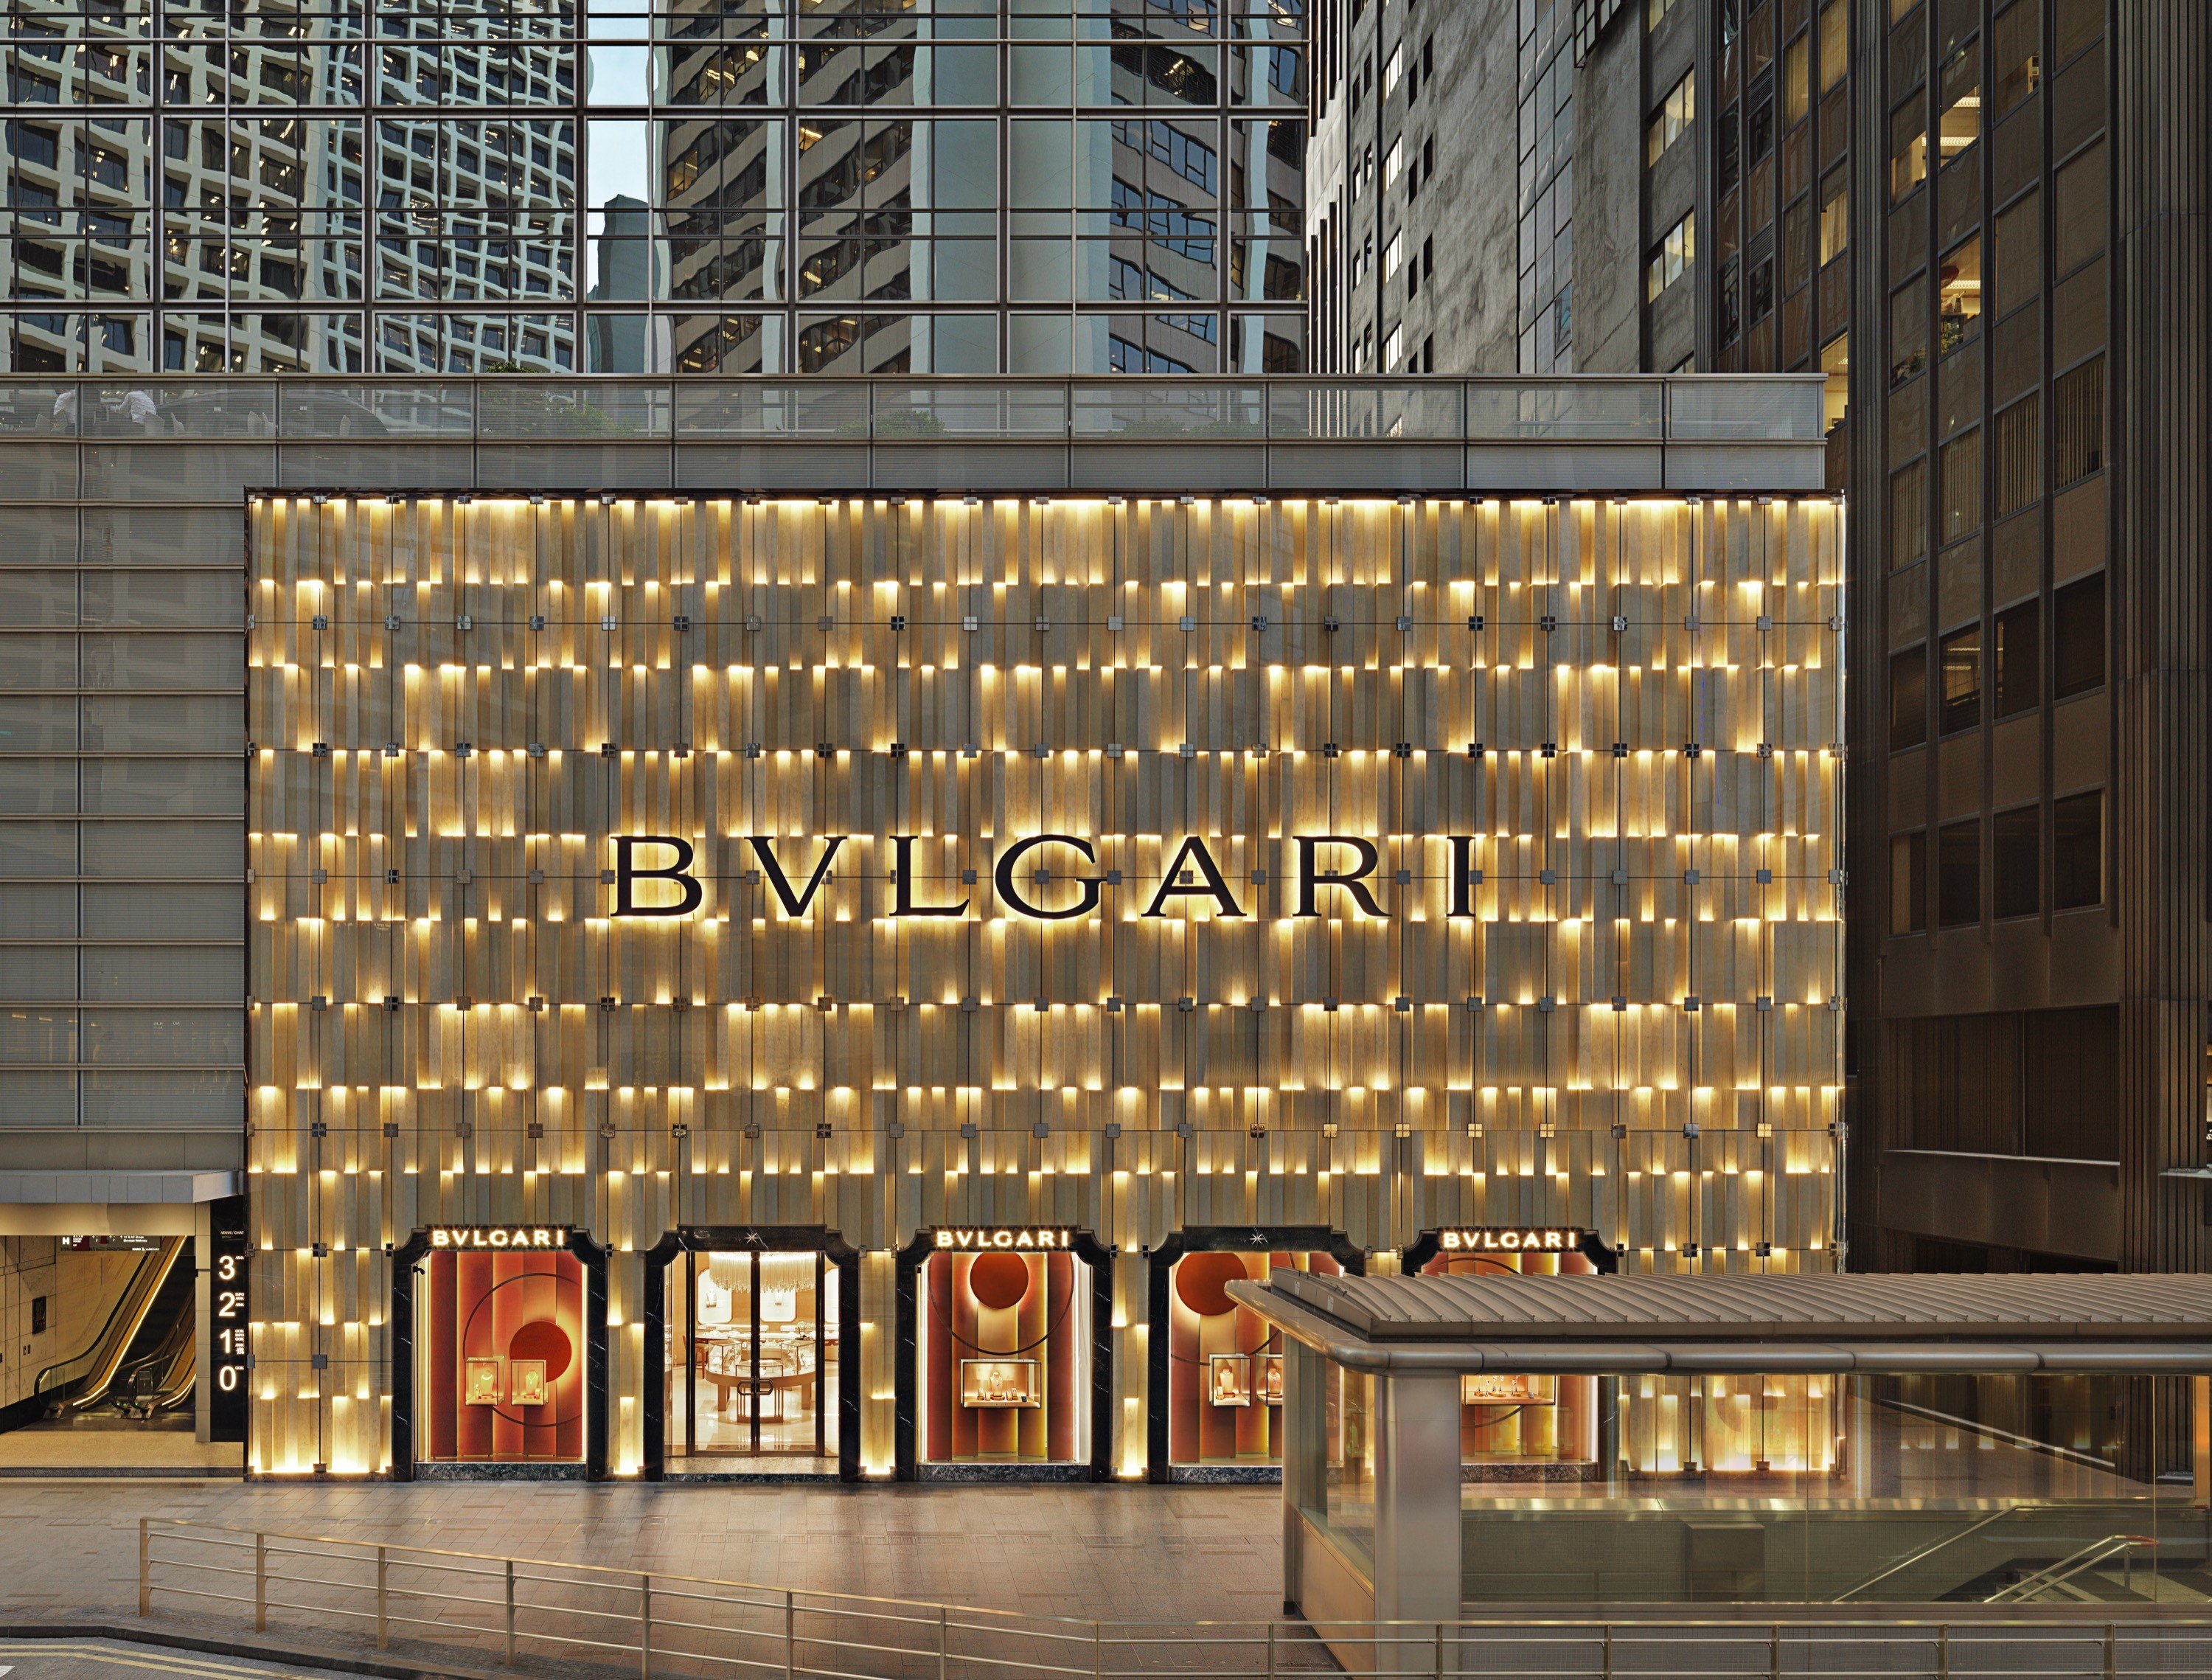 Bulgari's renovated flagship store in 